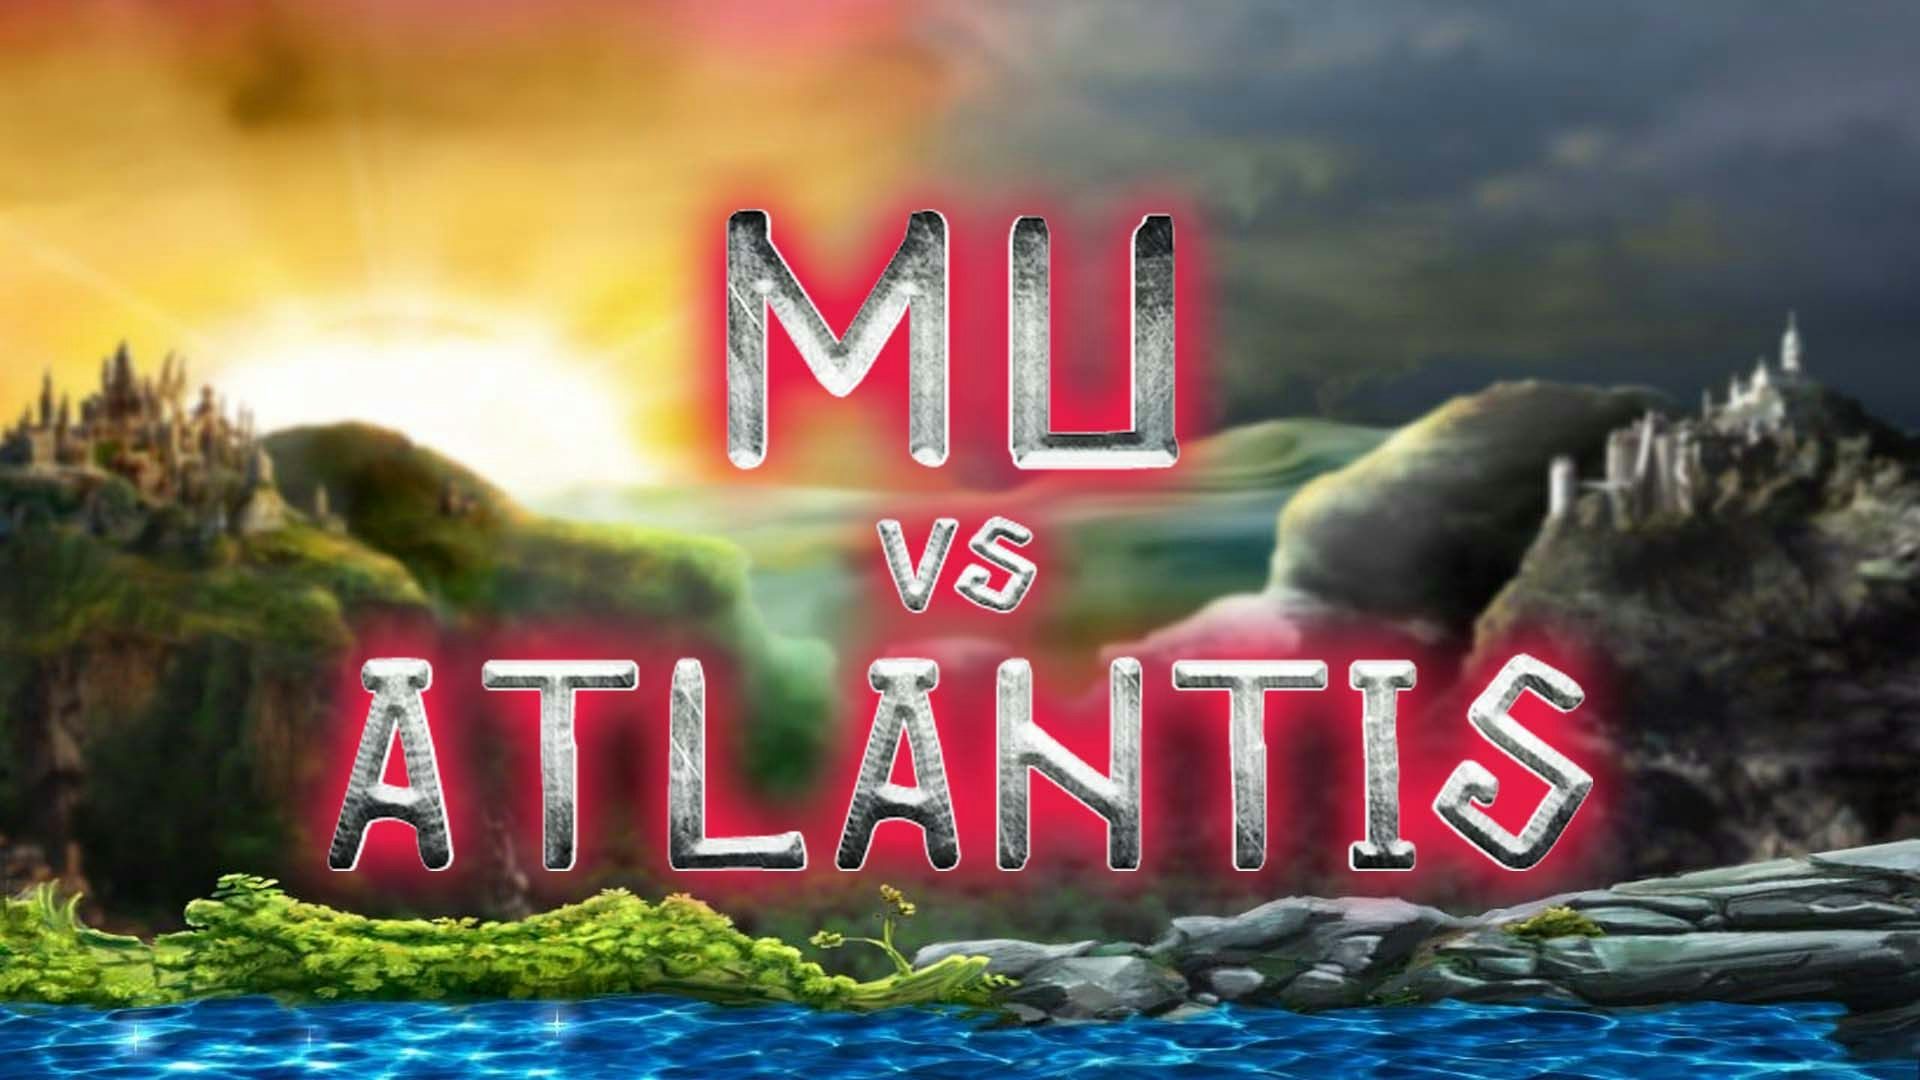 Mu vs Atlantis